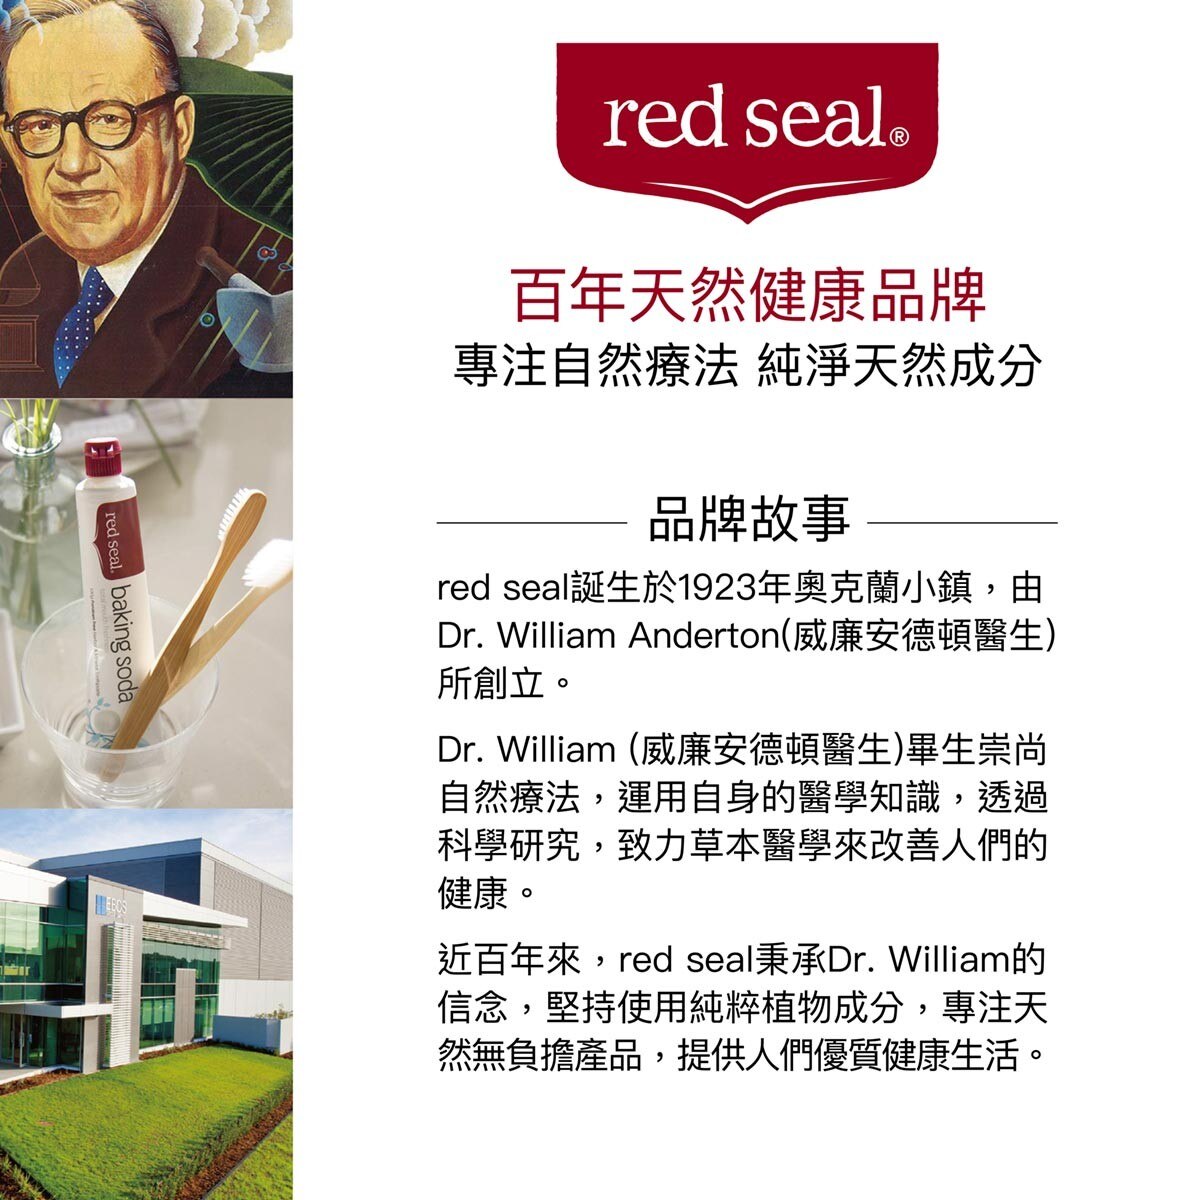 Red Seal 紅印擊漬淨白牙膏，淨白美齒無懈可擊，還能有效去除煙漬、茶漬、咖啡漬、紅酒漬。